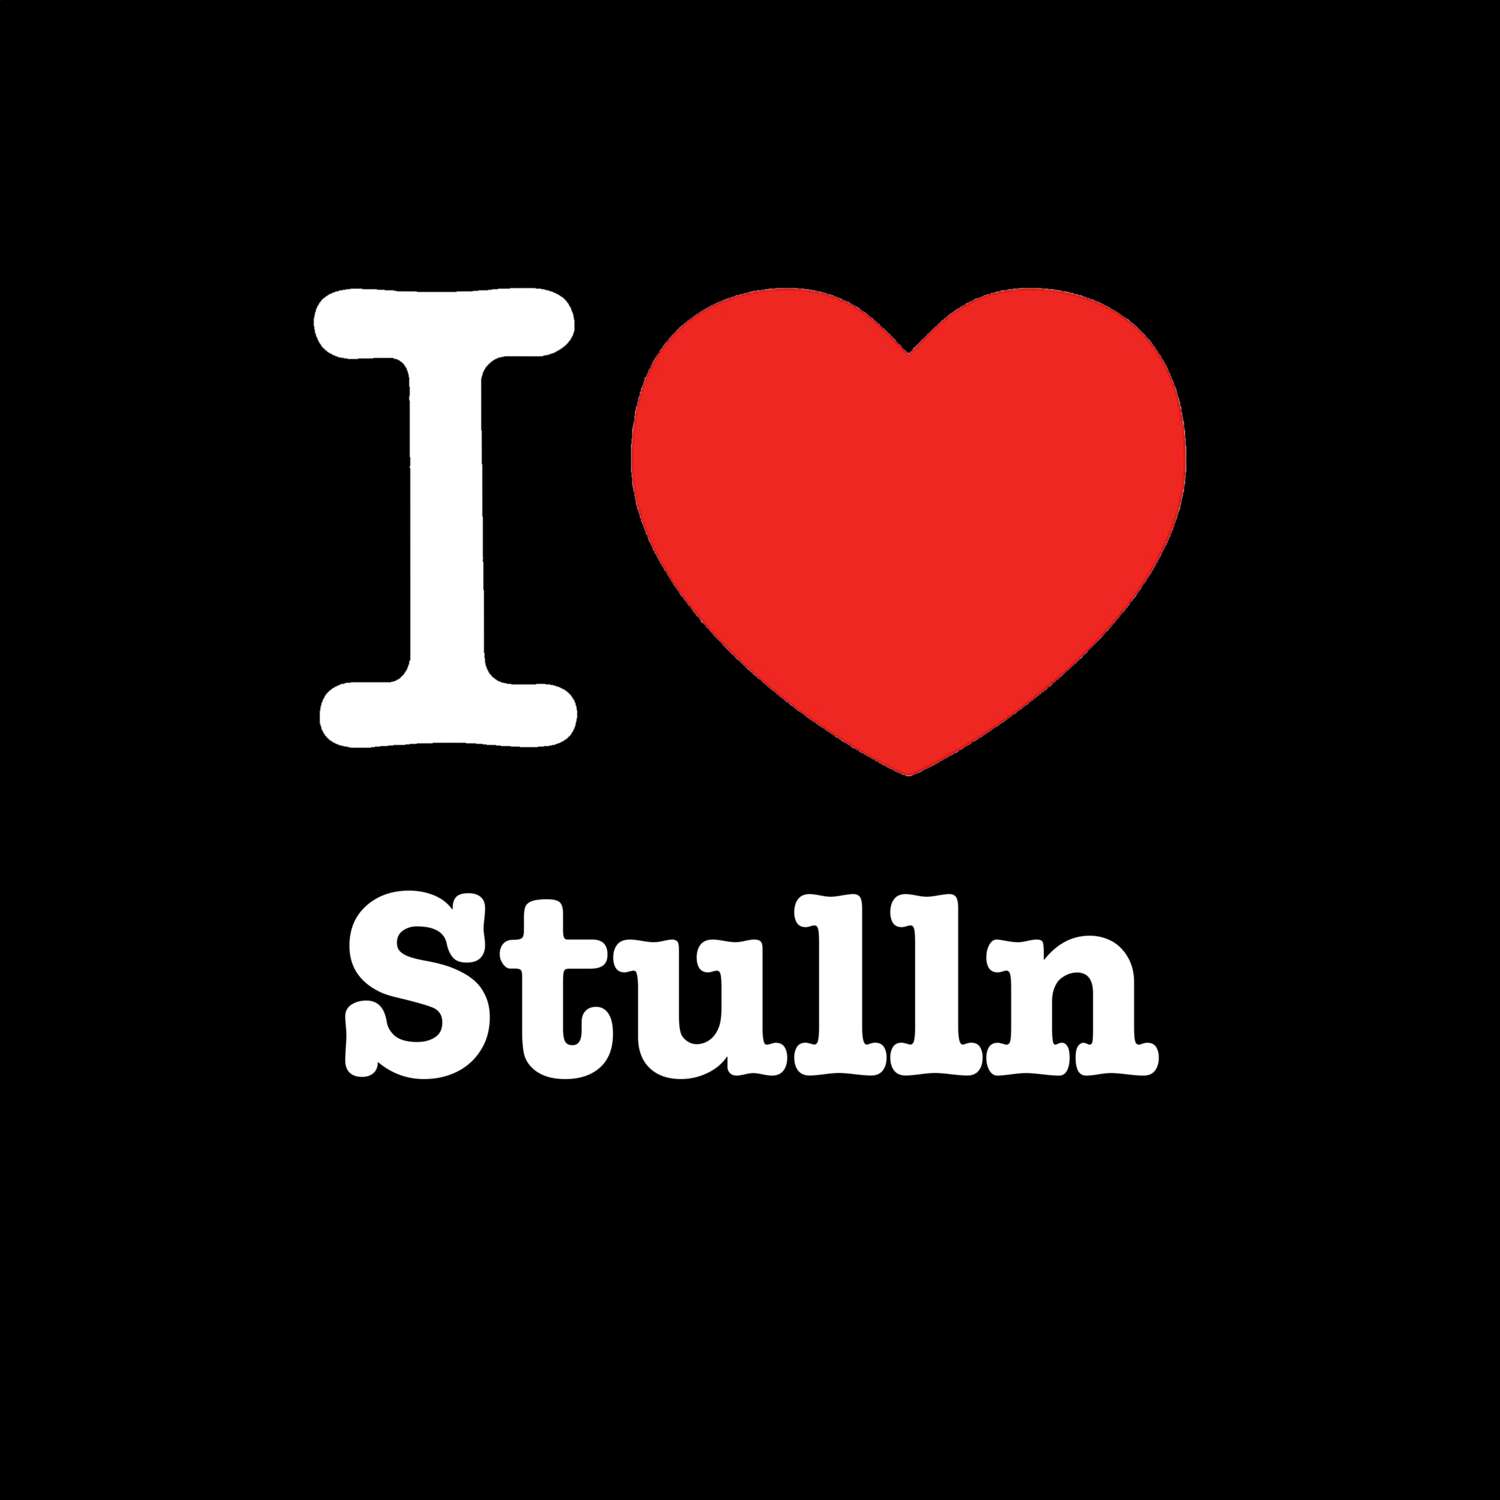 Stulln T-Shirt »I love«